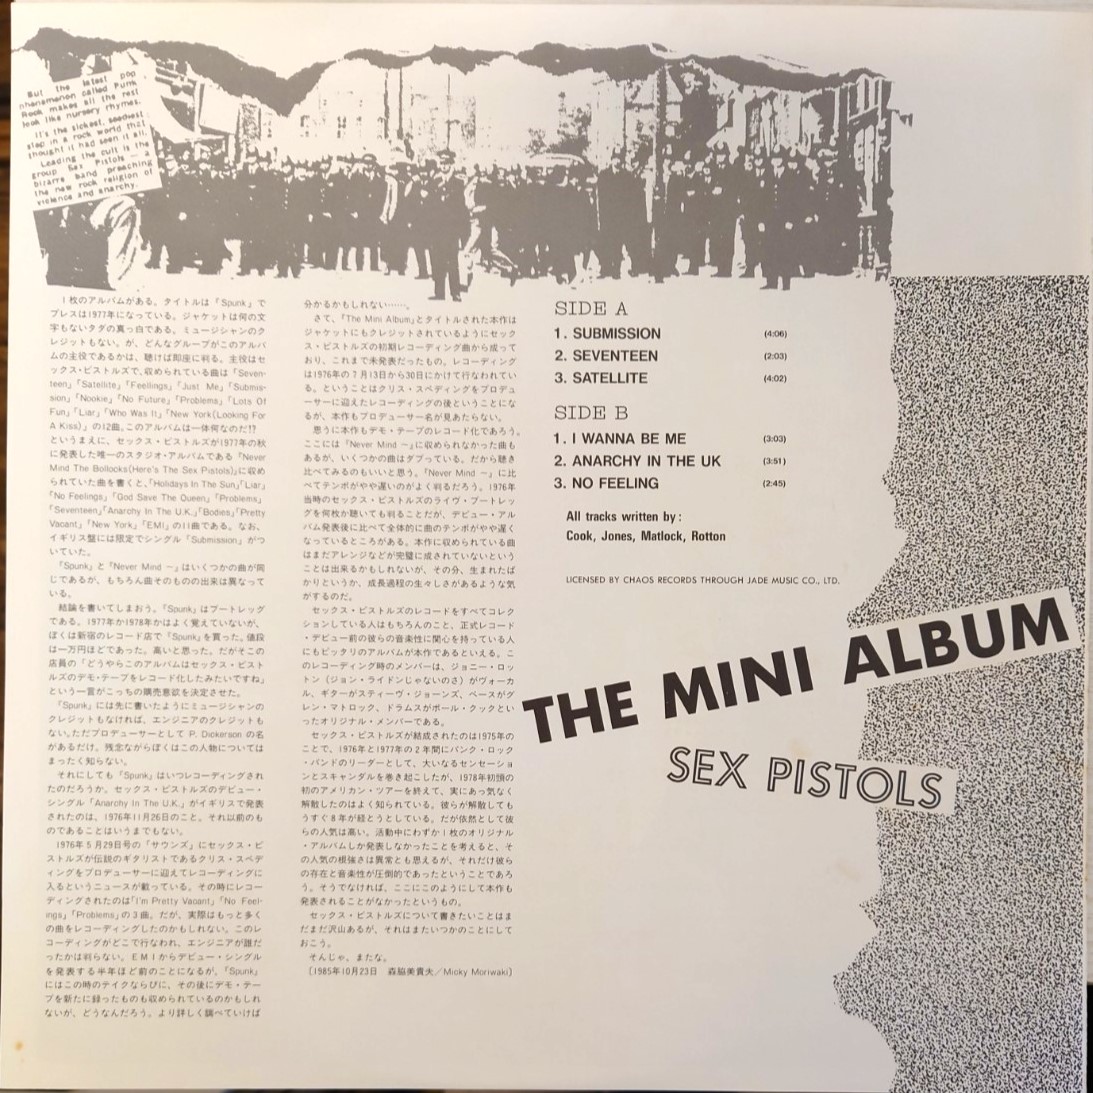 Sex Pistols – The Mini Album | 中古レコード通販・買取のアカル・レコーズ